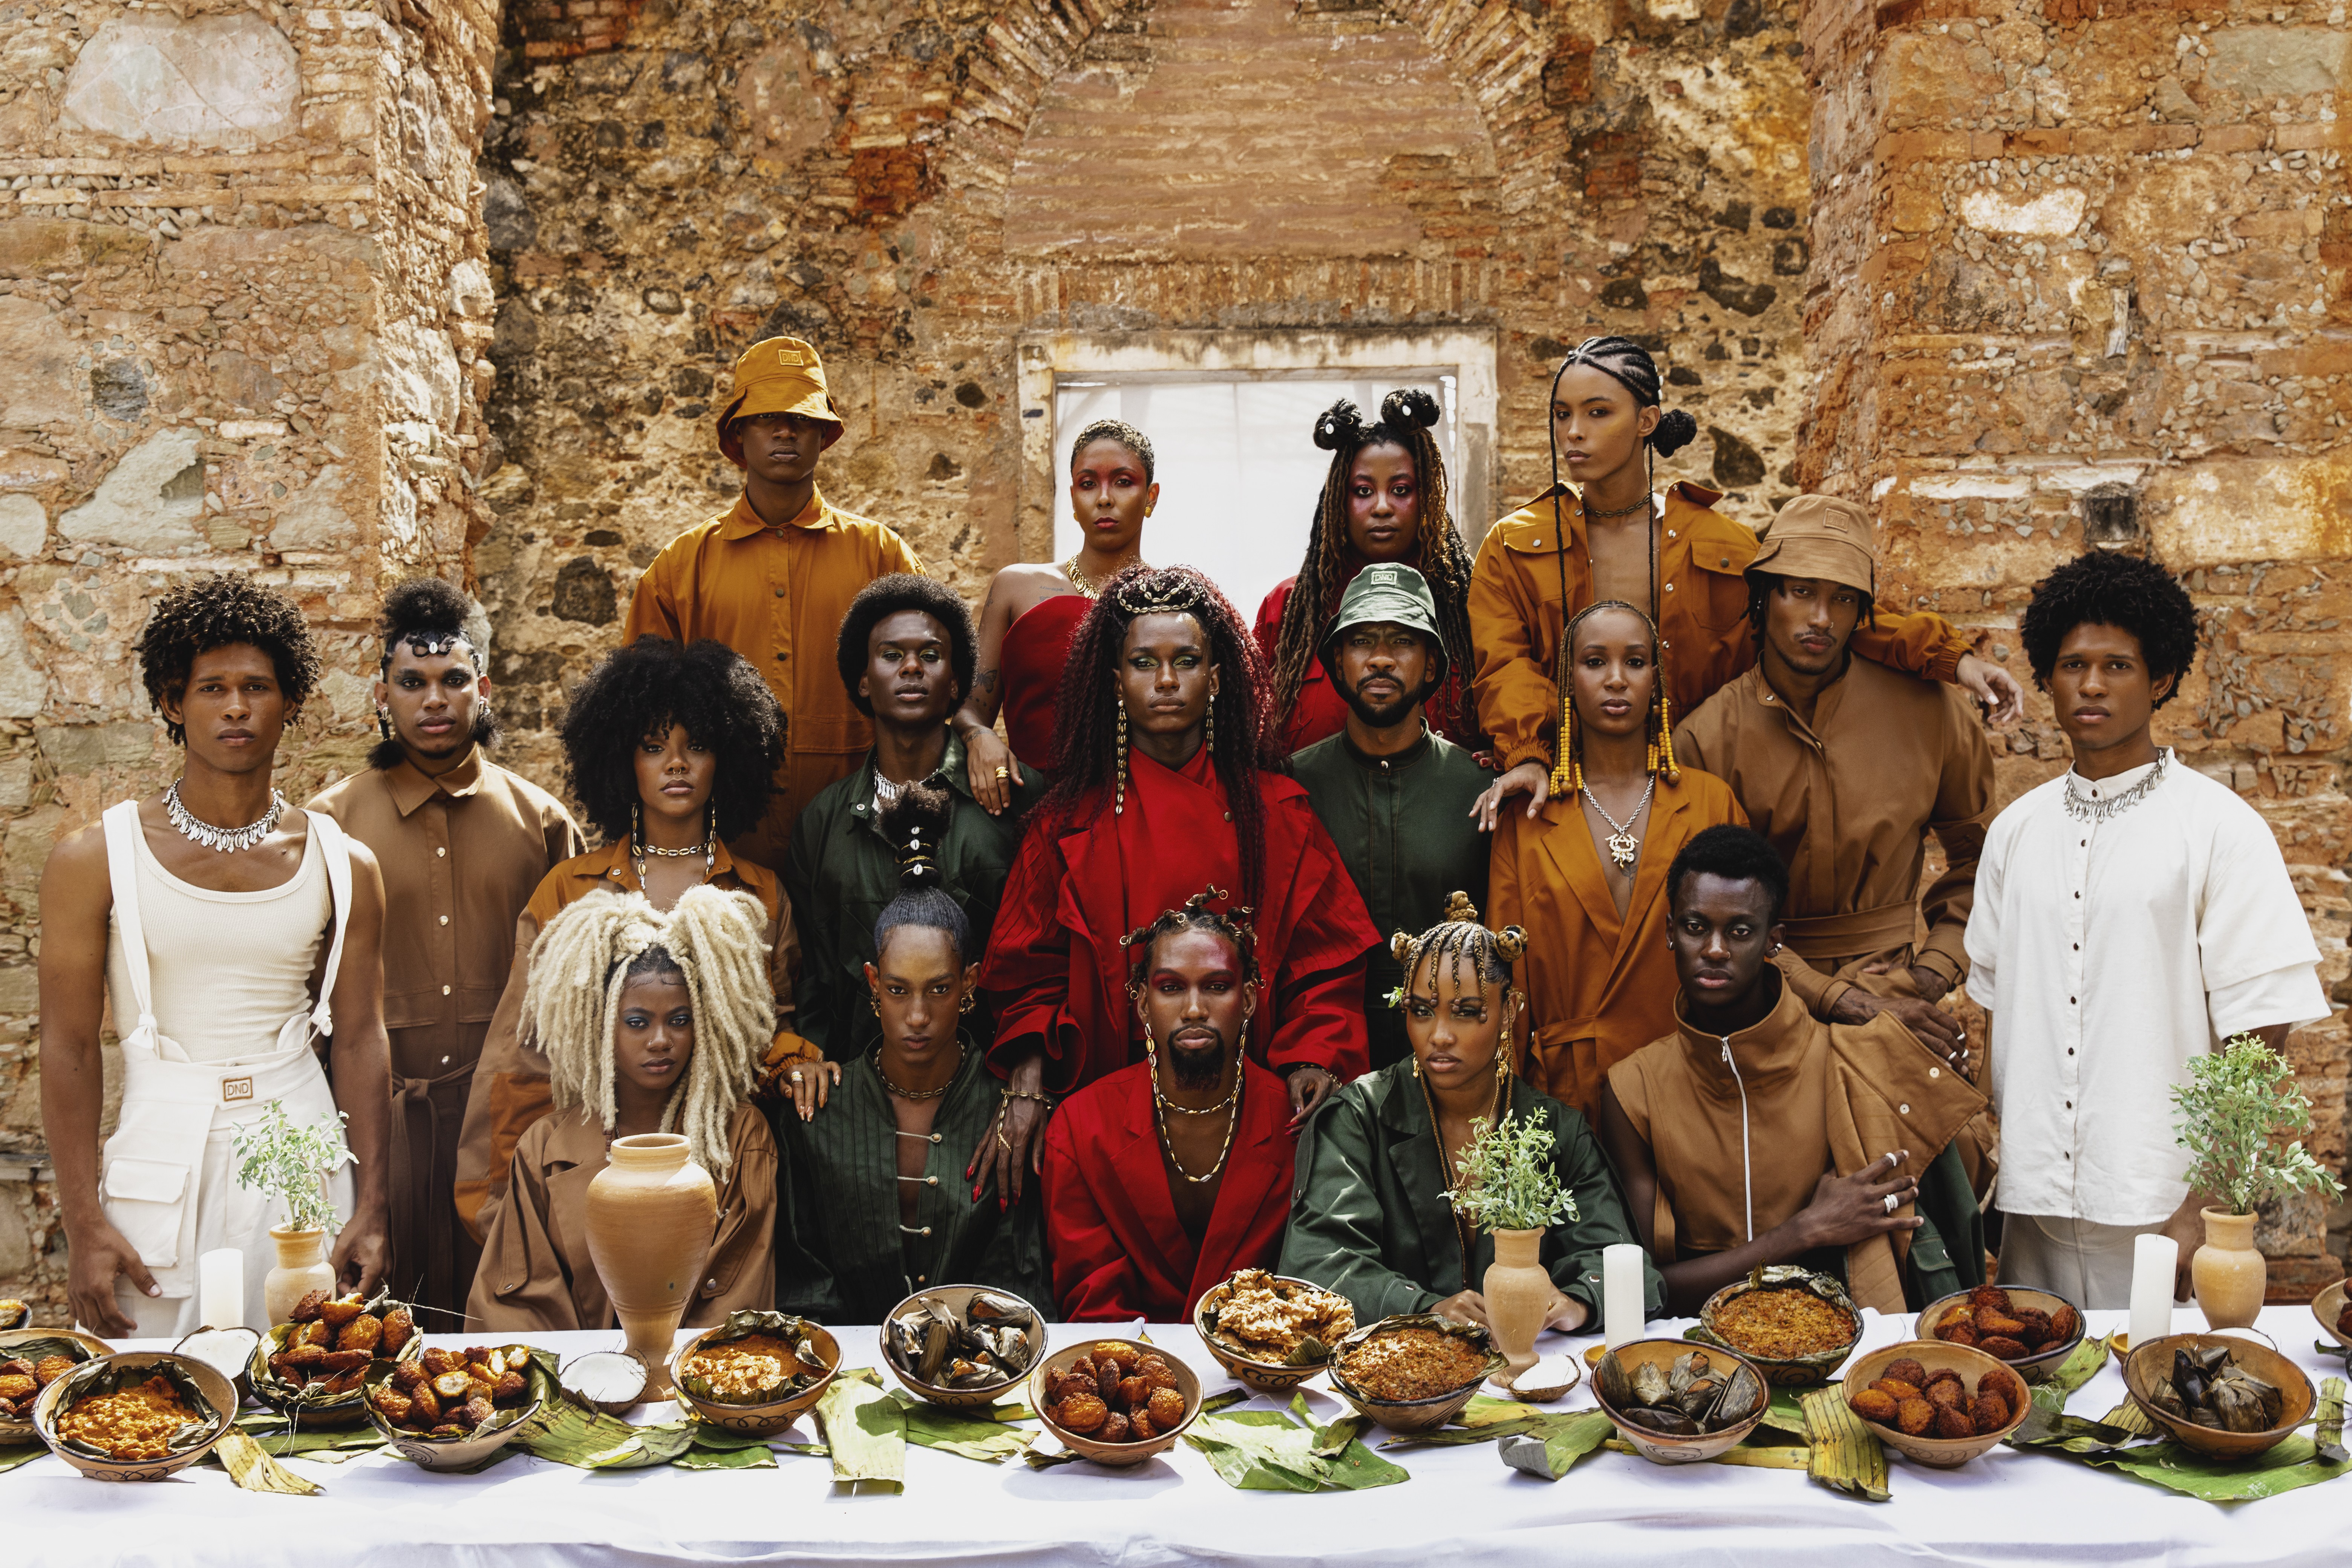 Estreia na SPFW, Dendezeiro lança coleção inspirada na diversidade baiana (Foto: Divulgação)